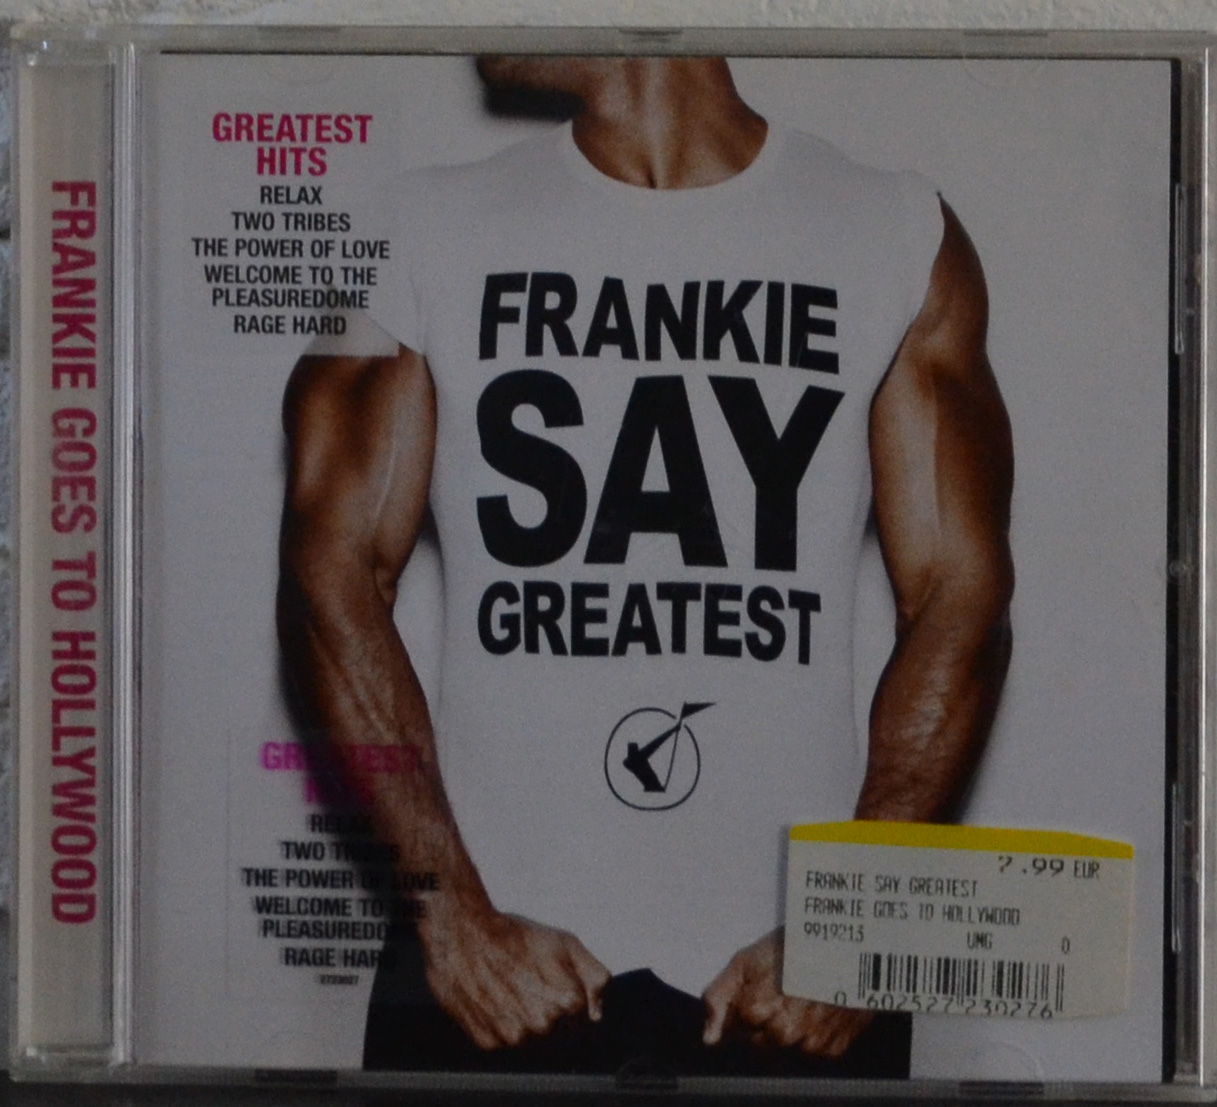 Frankie say greatest